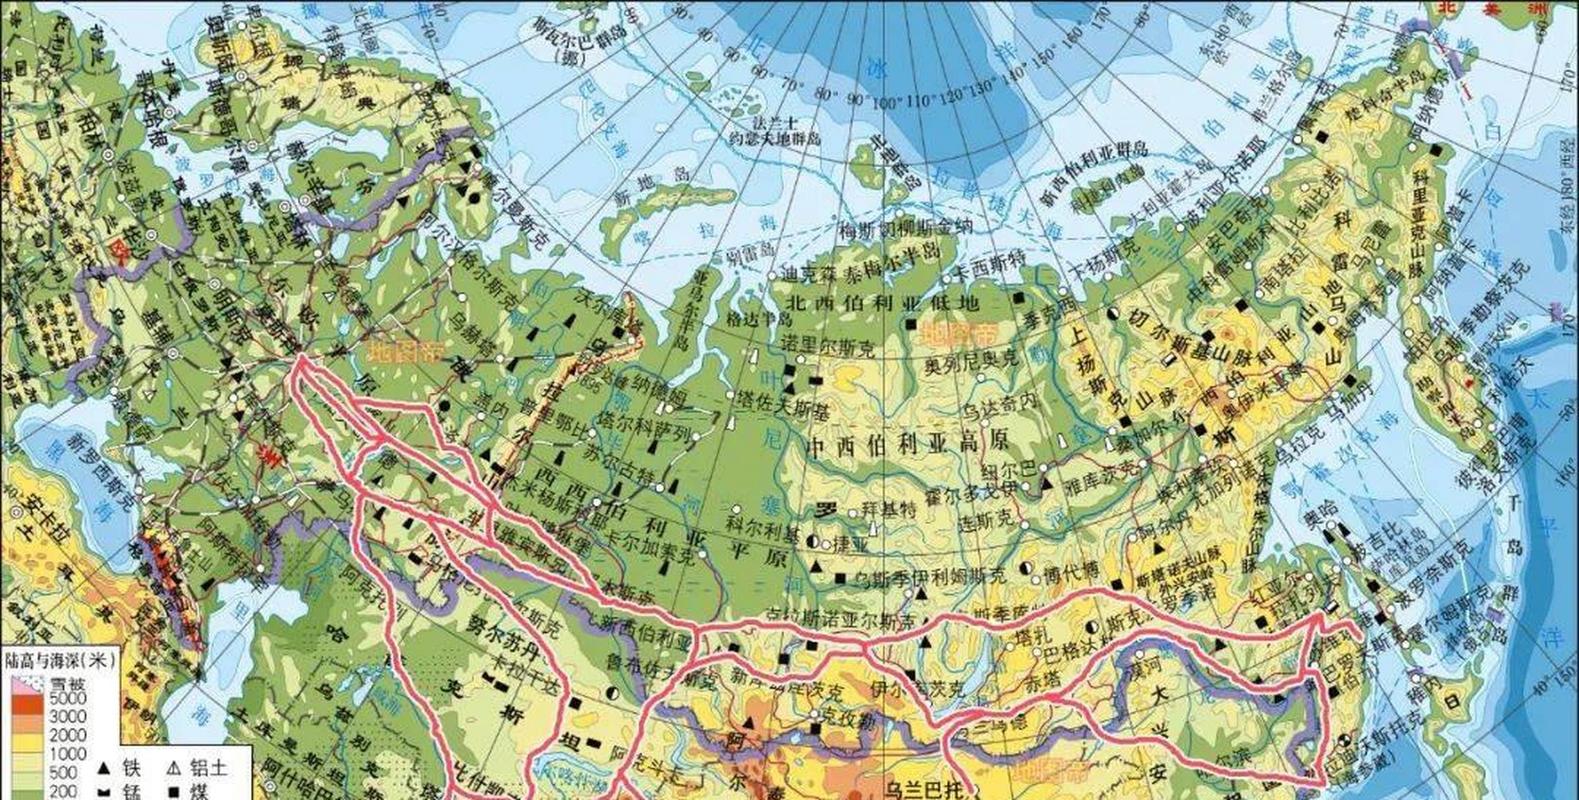 【全球最长的铁路线在哪个国家?】 俄罗斯的西伯利亚铁路(含支线)很长